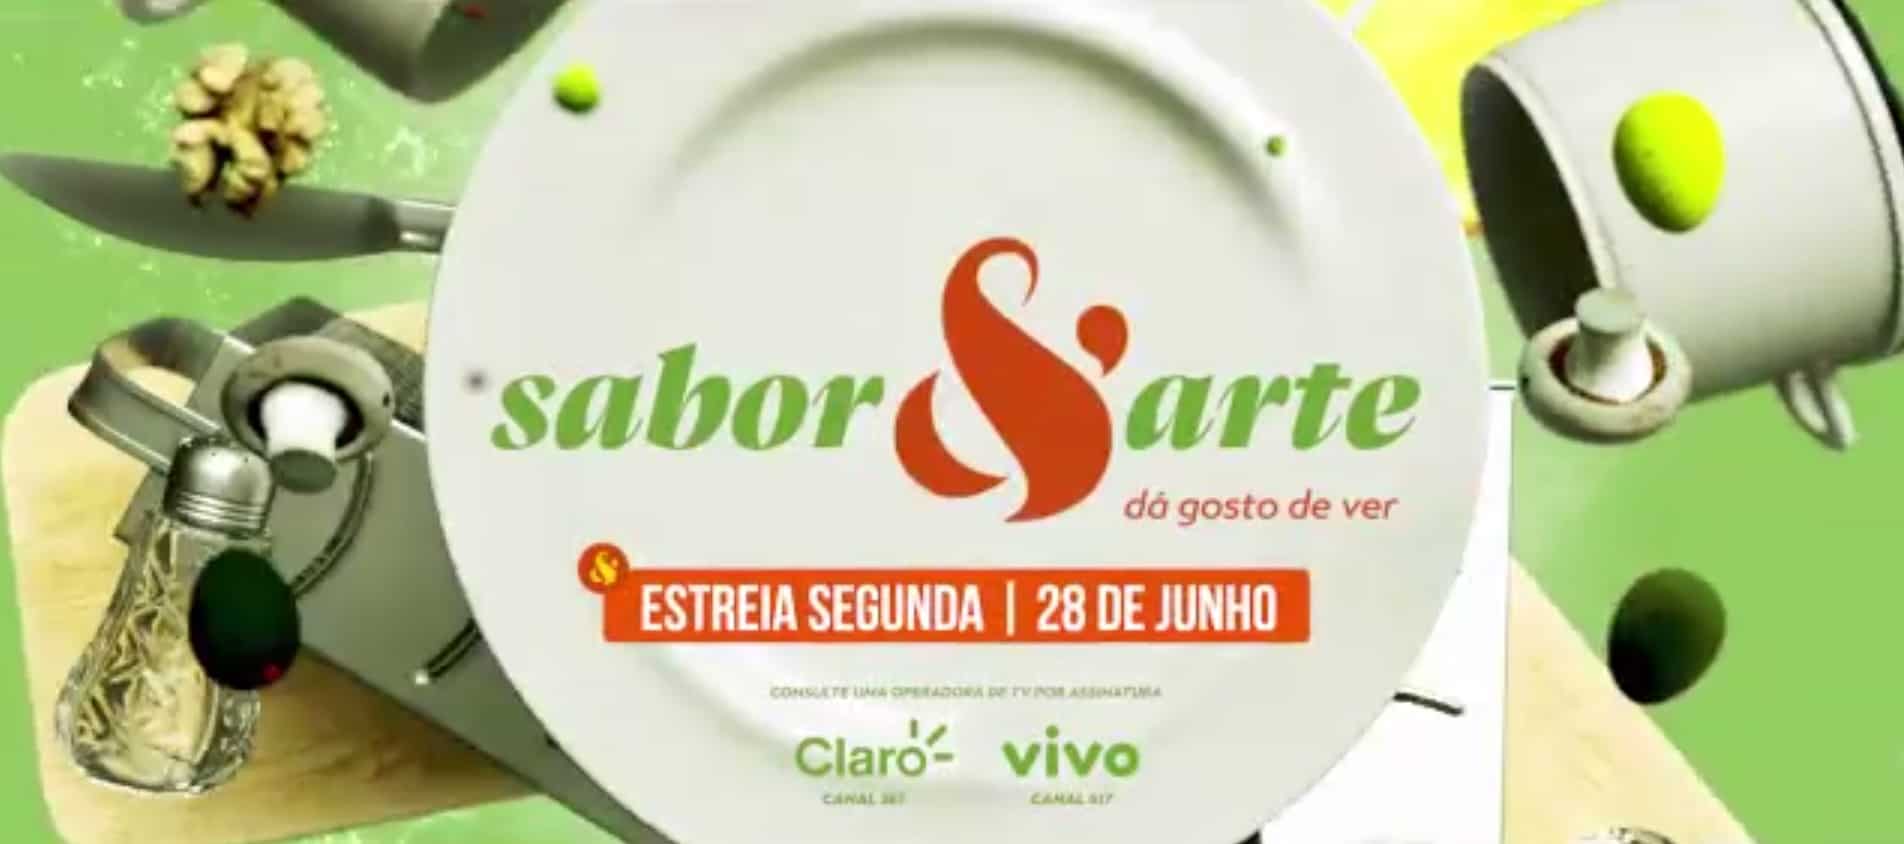 Band estreia canal gastronômico Sabor & Arte com time de elite